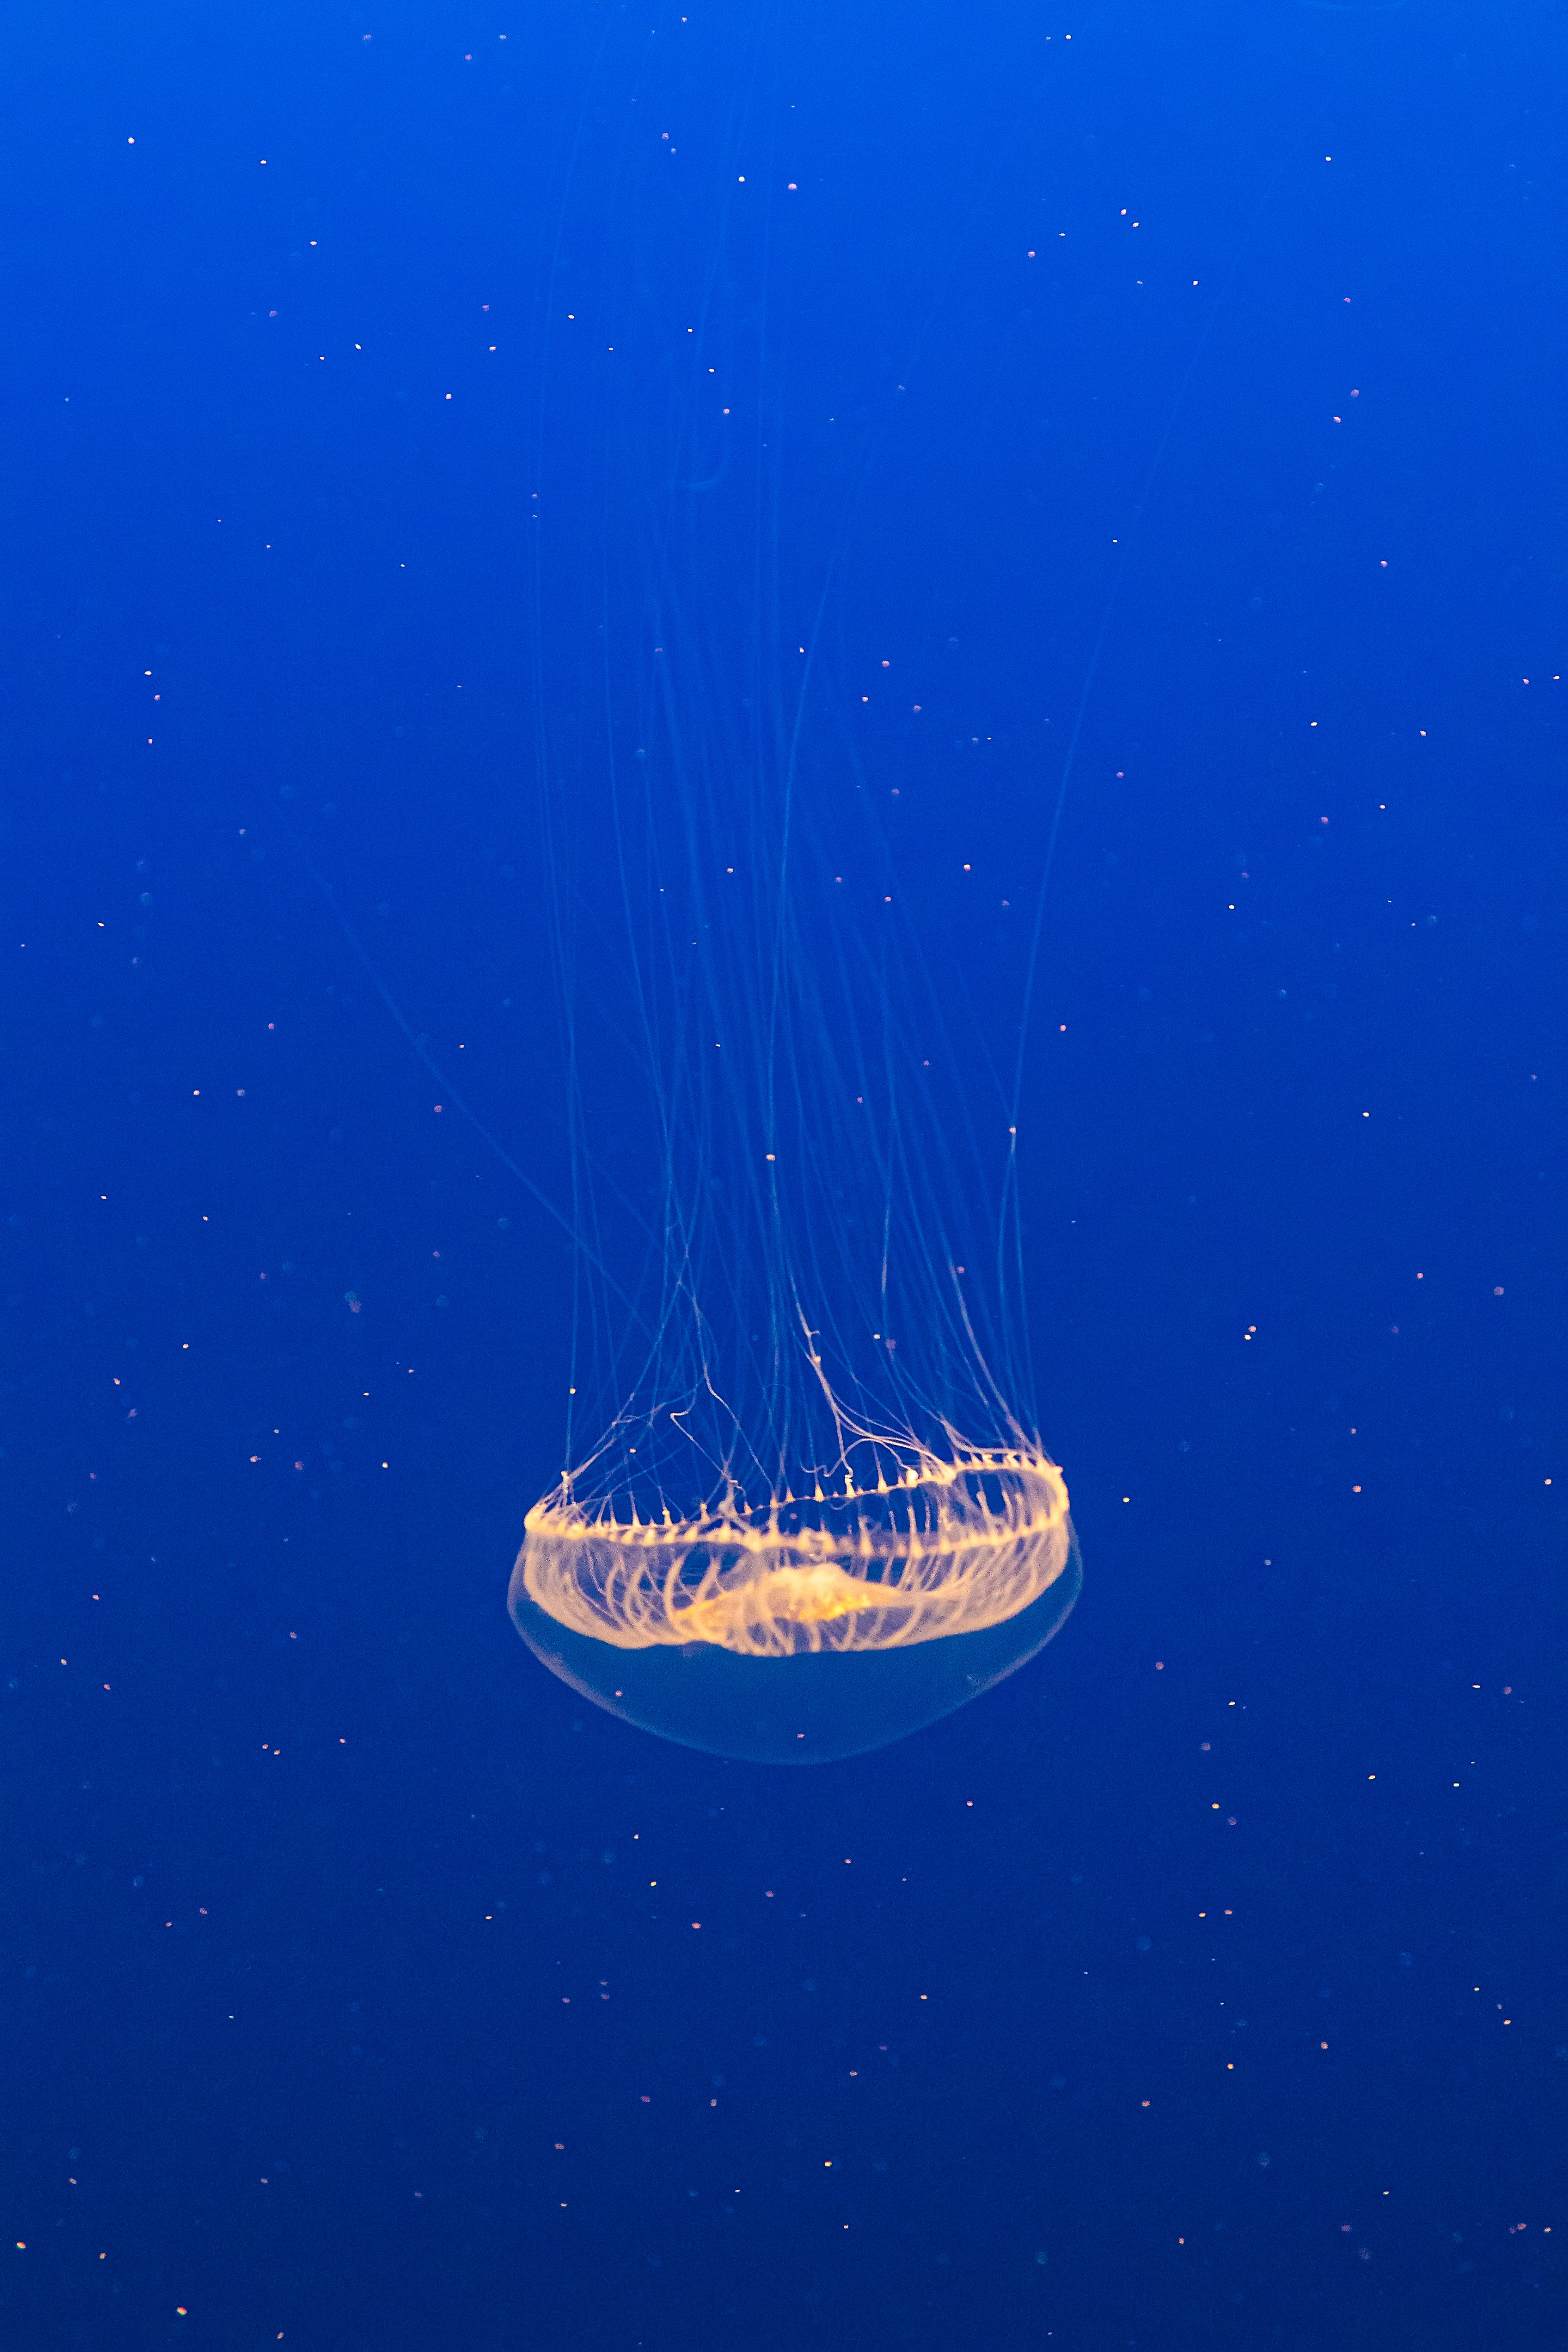 jellyfish, under water, transparent, animals, water, underwater